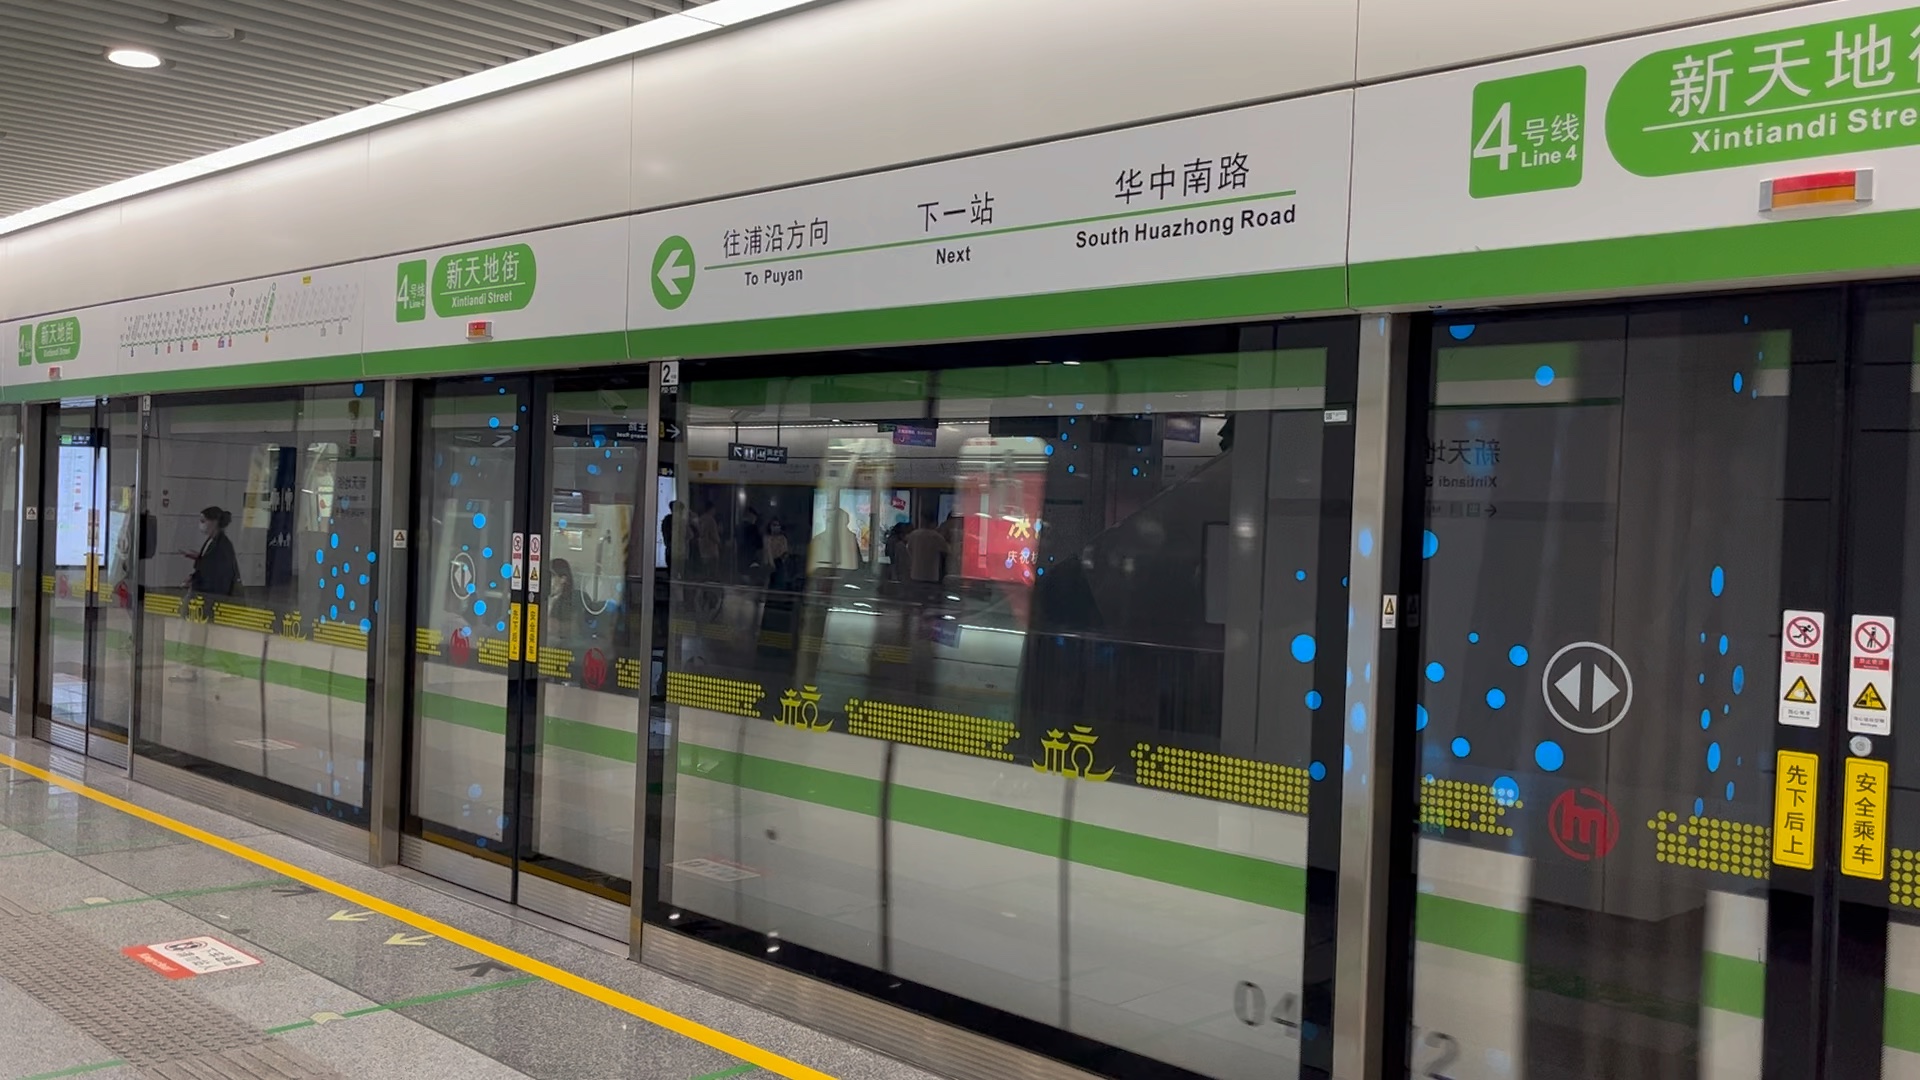 【杭州地铁4号线】新天地街站列车出站